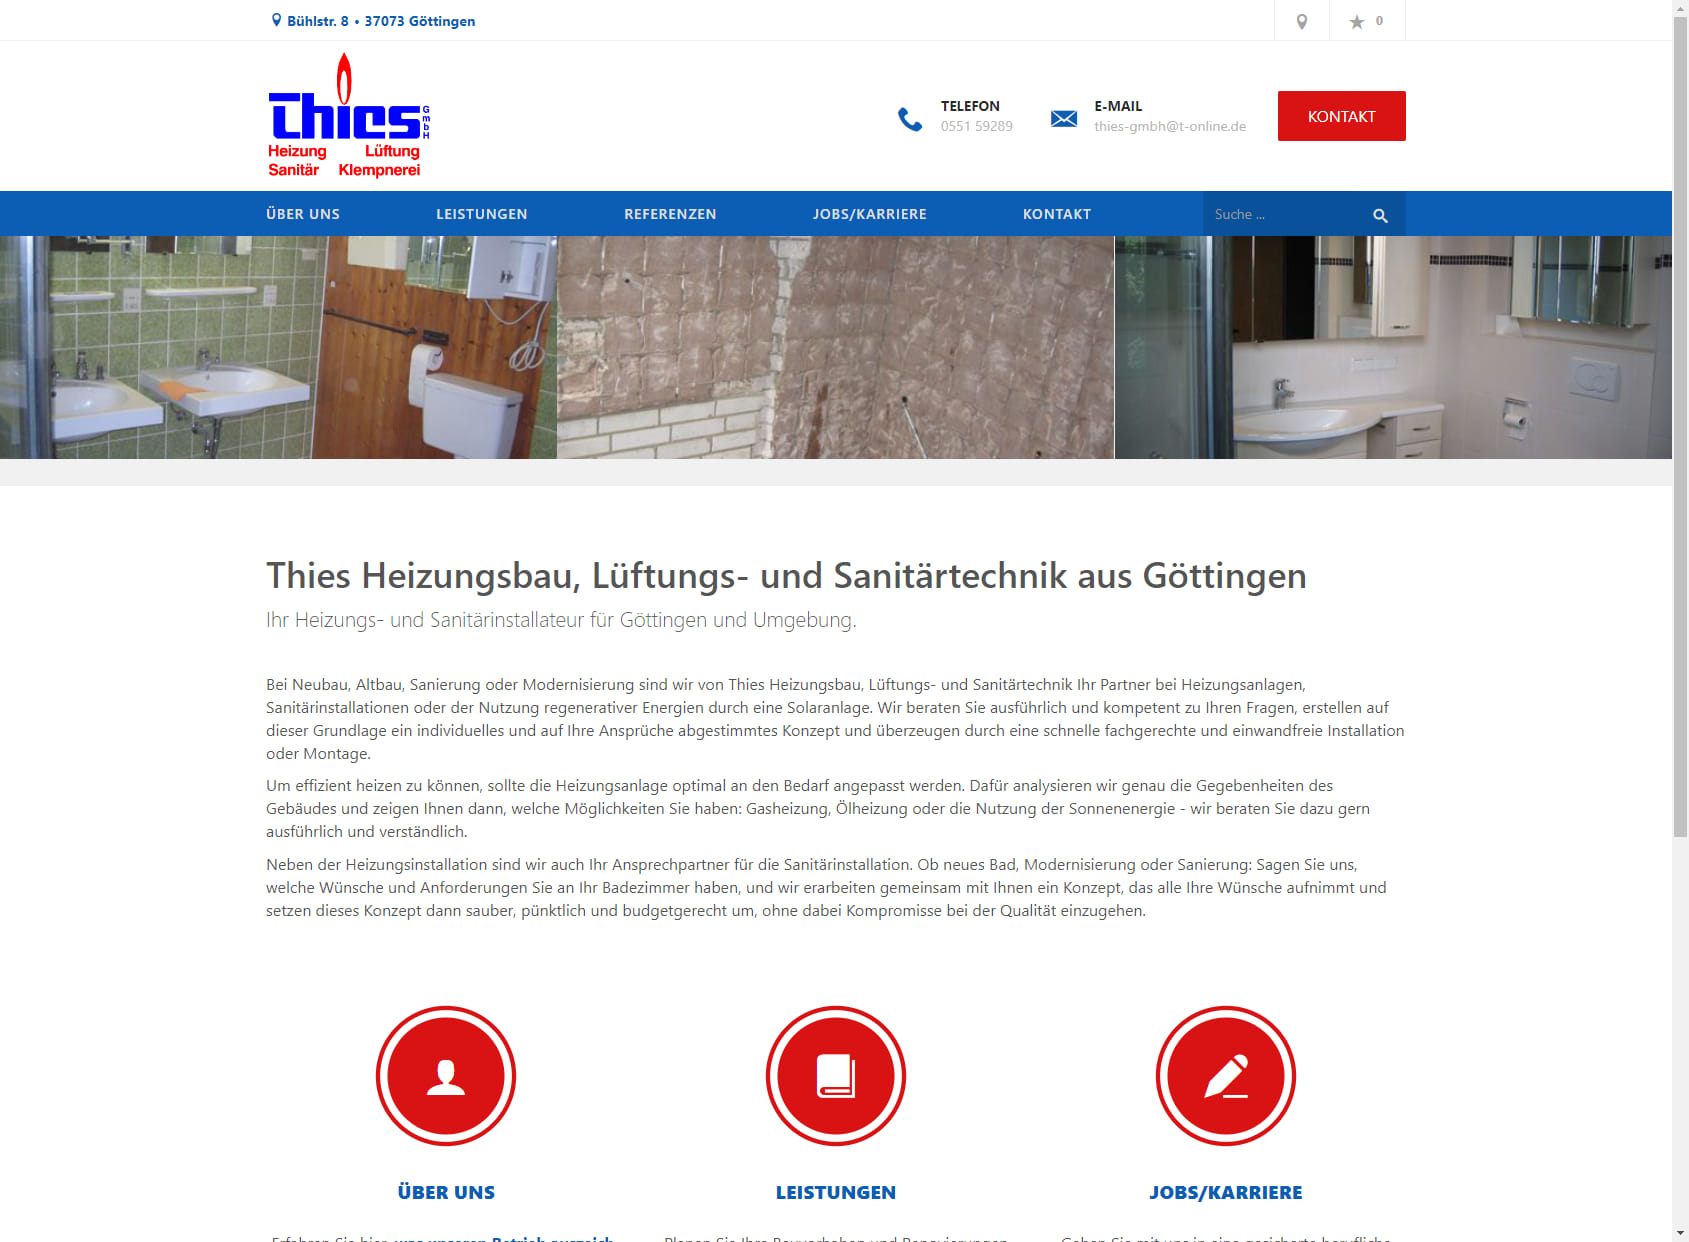 Thies Heizungsbau, Lüftungs- und Sanitärtechnik GmbH